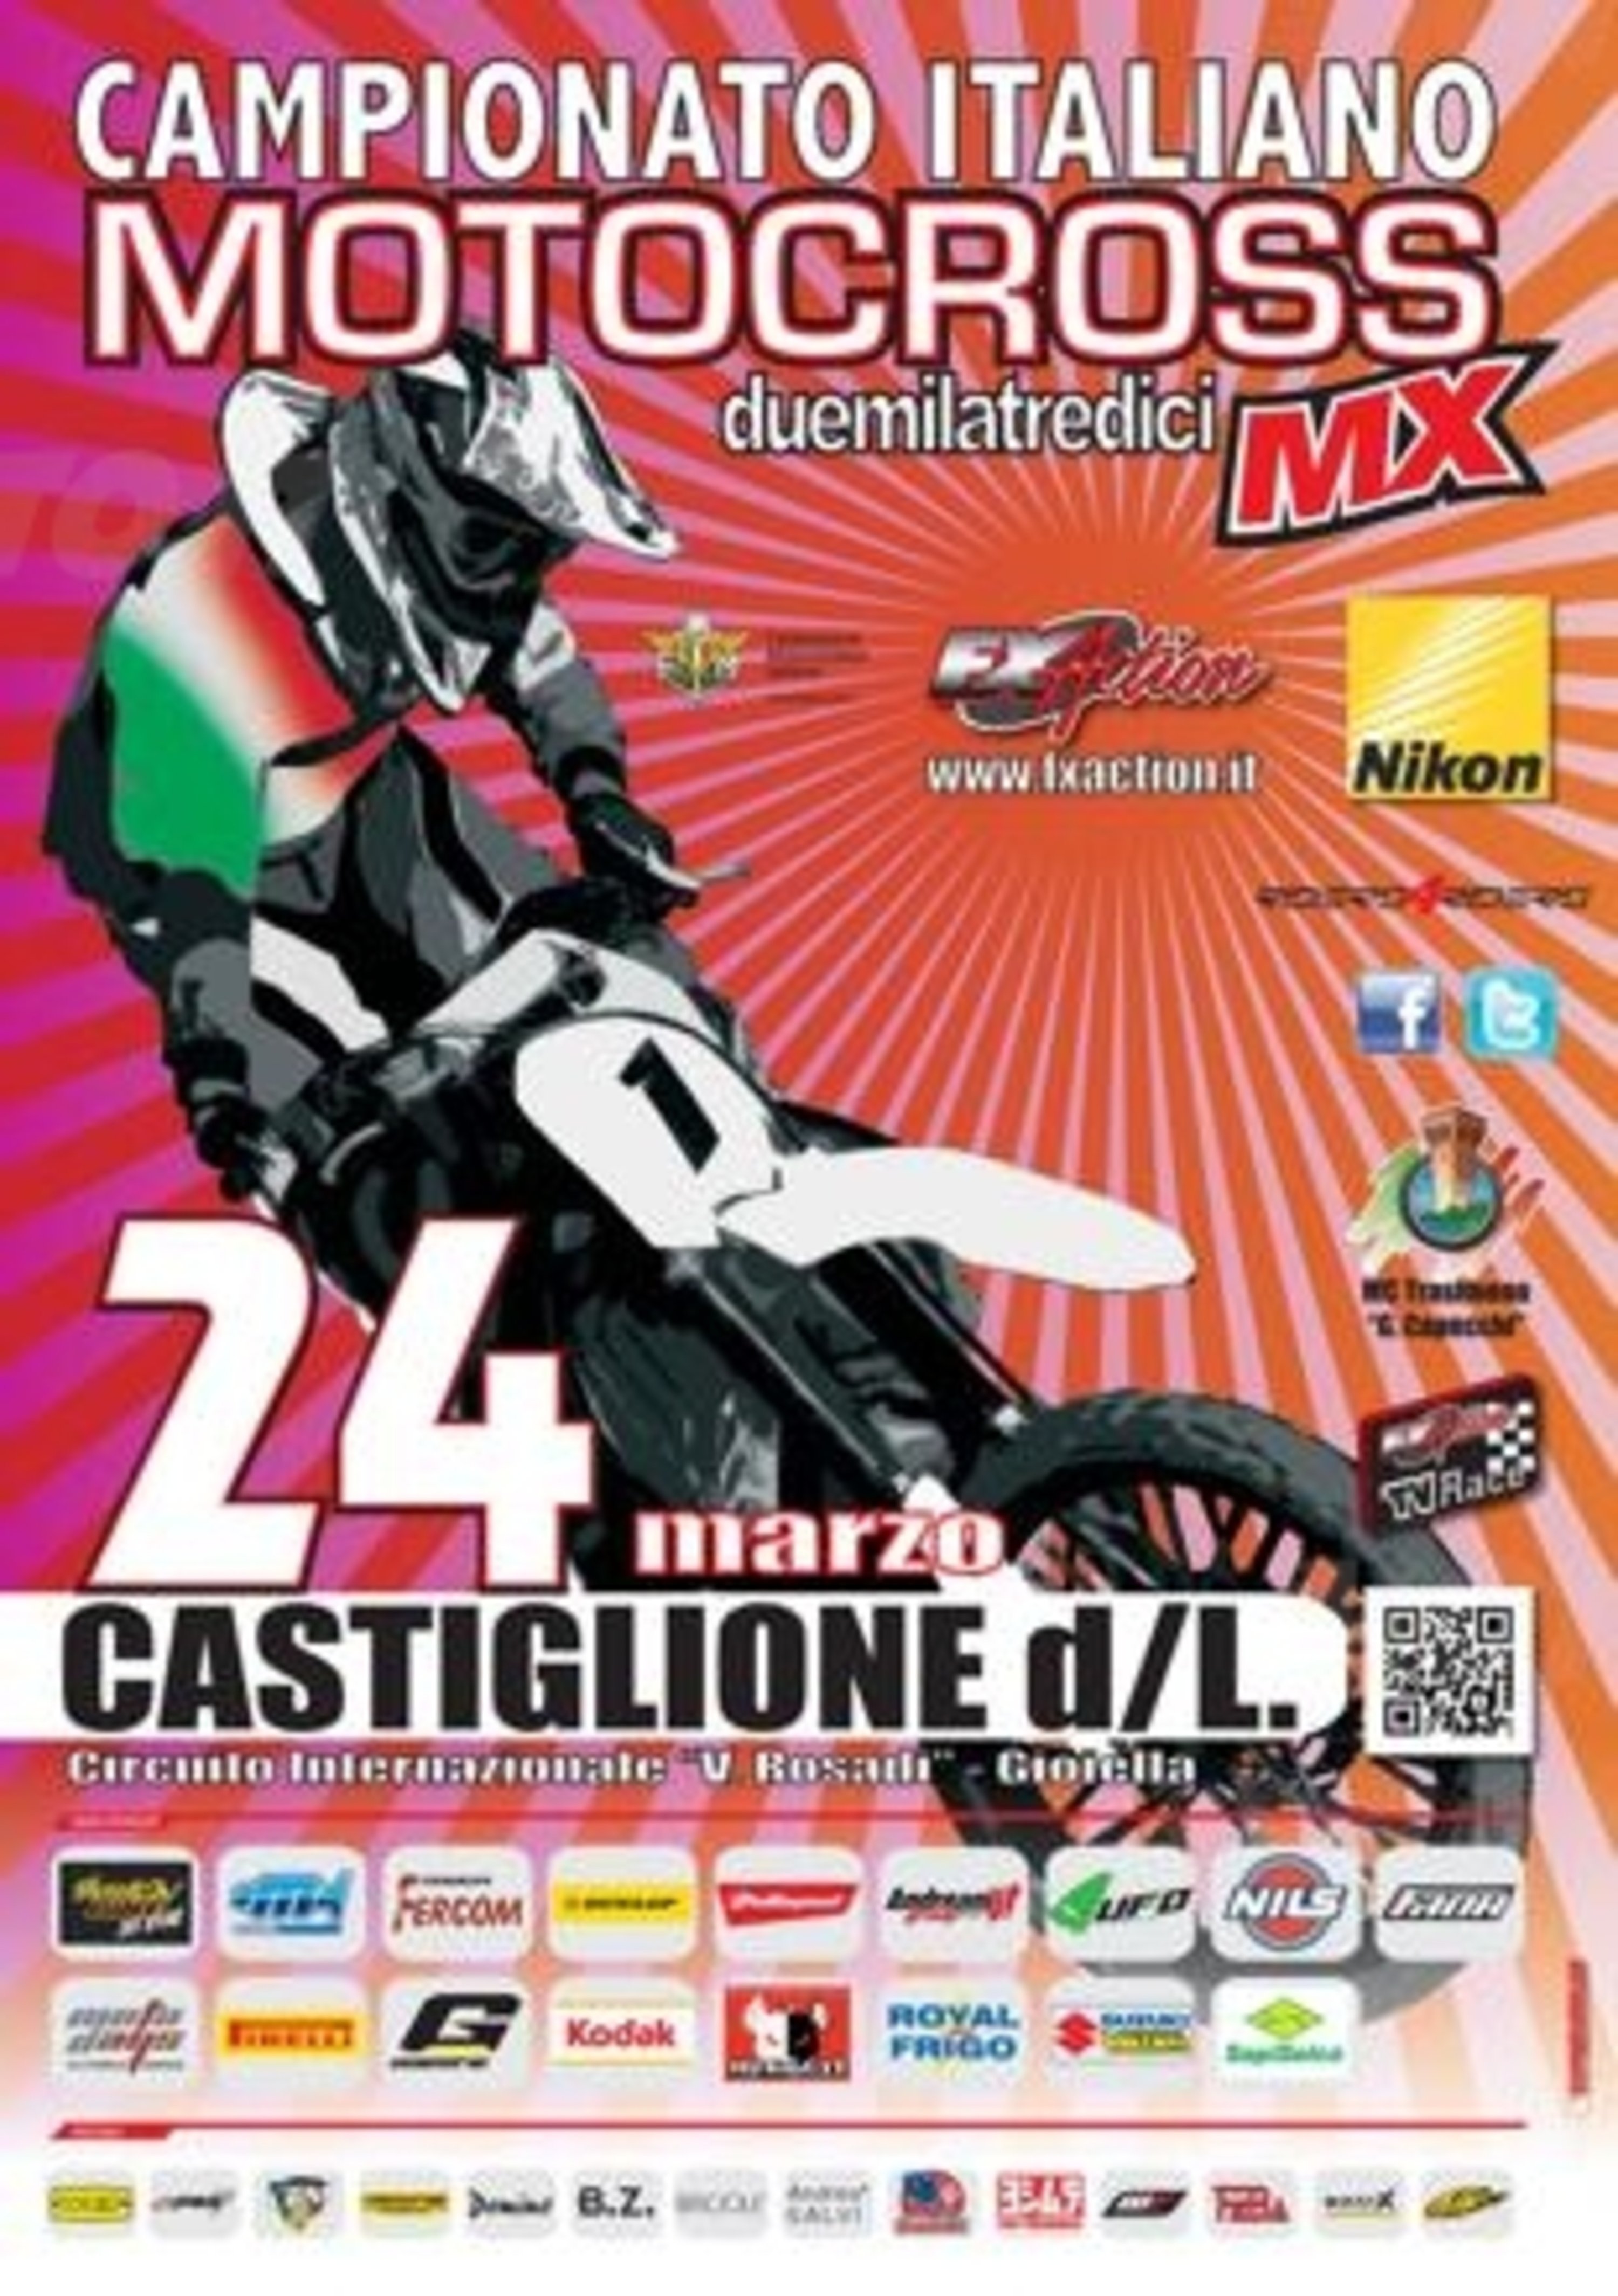 Seconda tappa del Campionato Italiano Motocross MX1 e MX2 a Gioiella